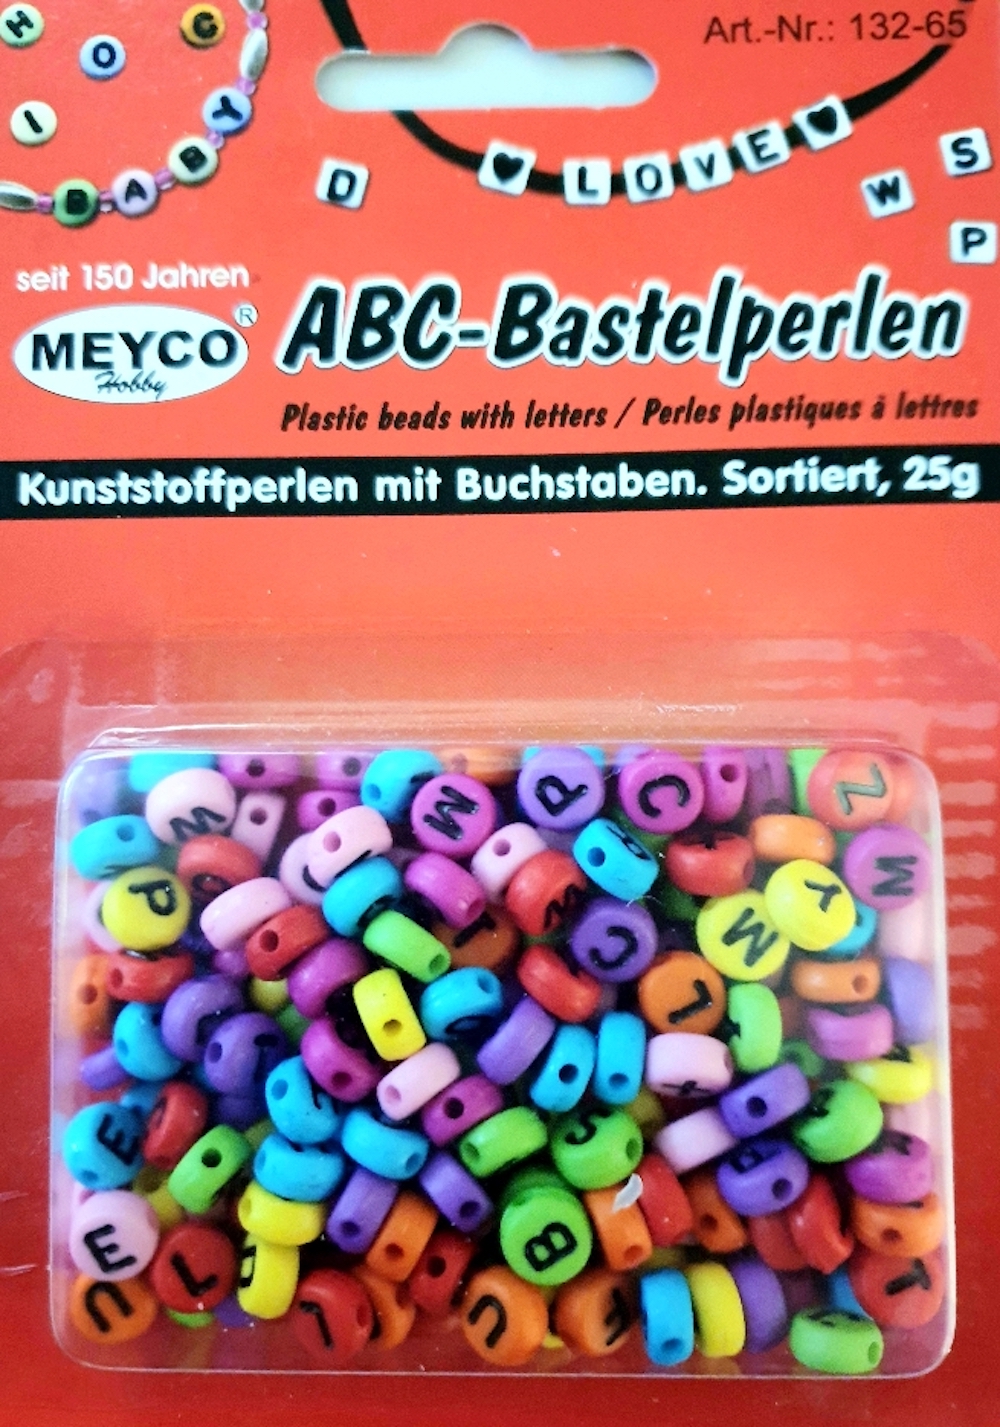 ABC-Kunststoffperlen m.Buchstaben, 25g, rund, bunt